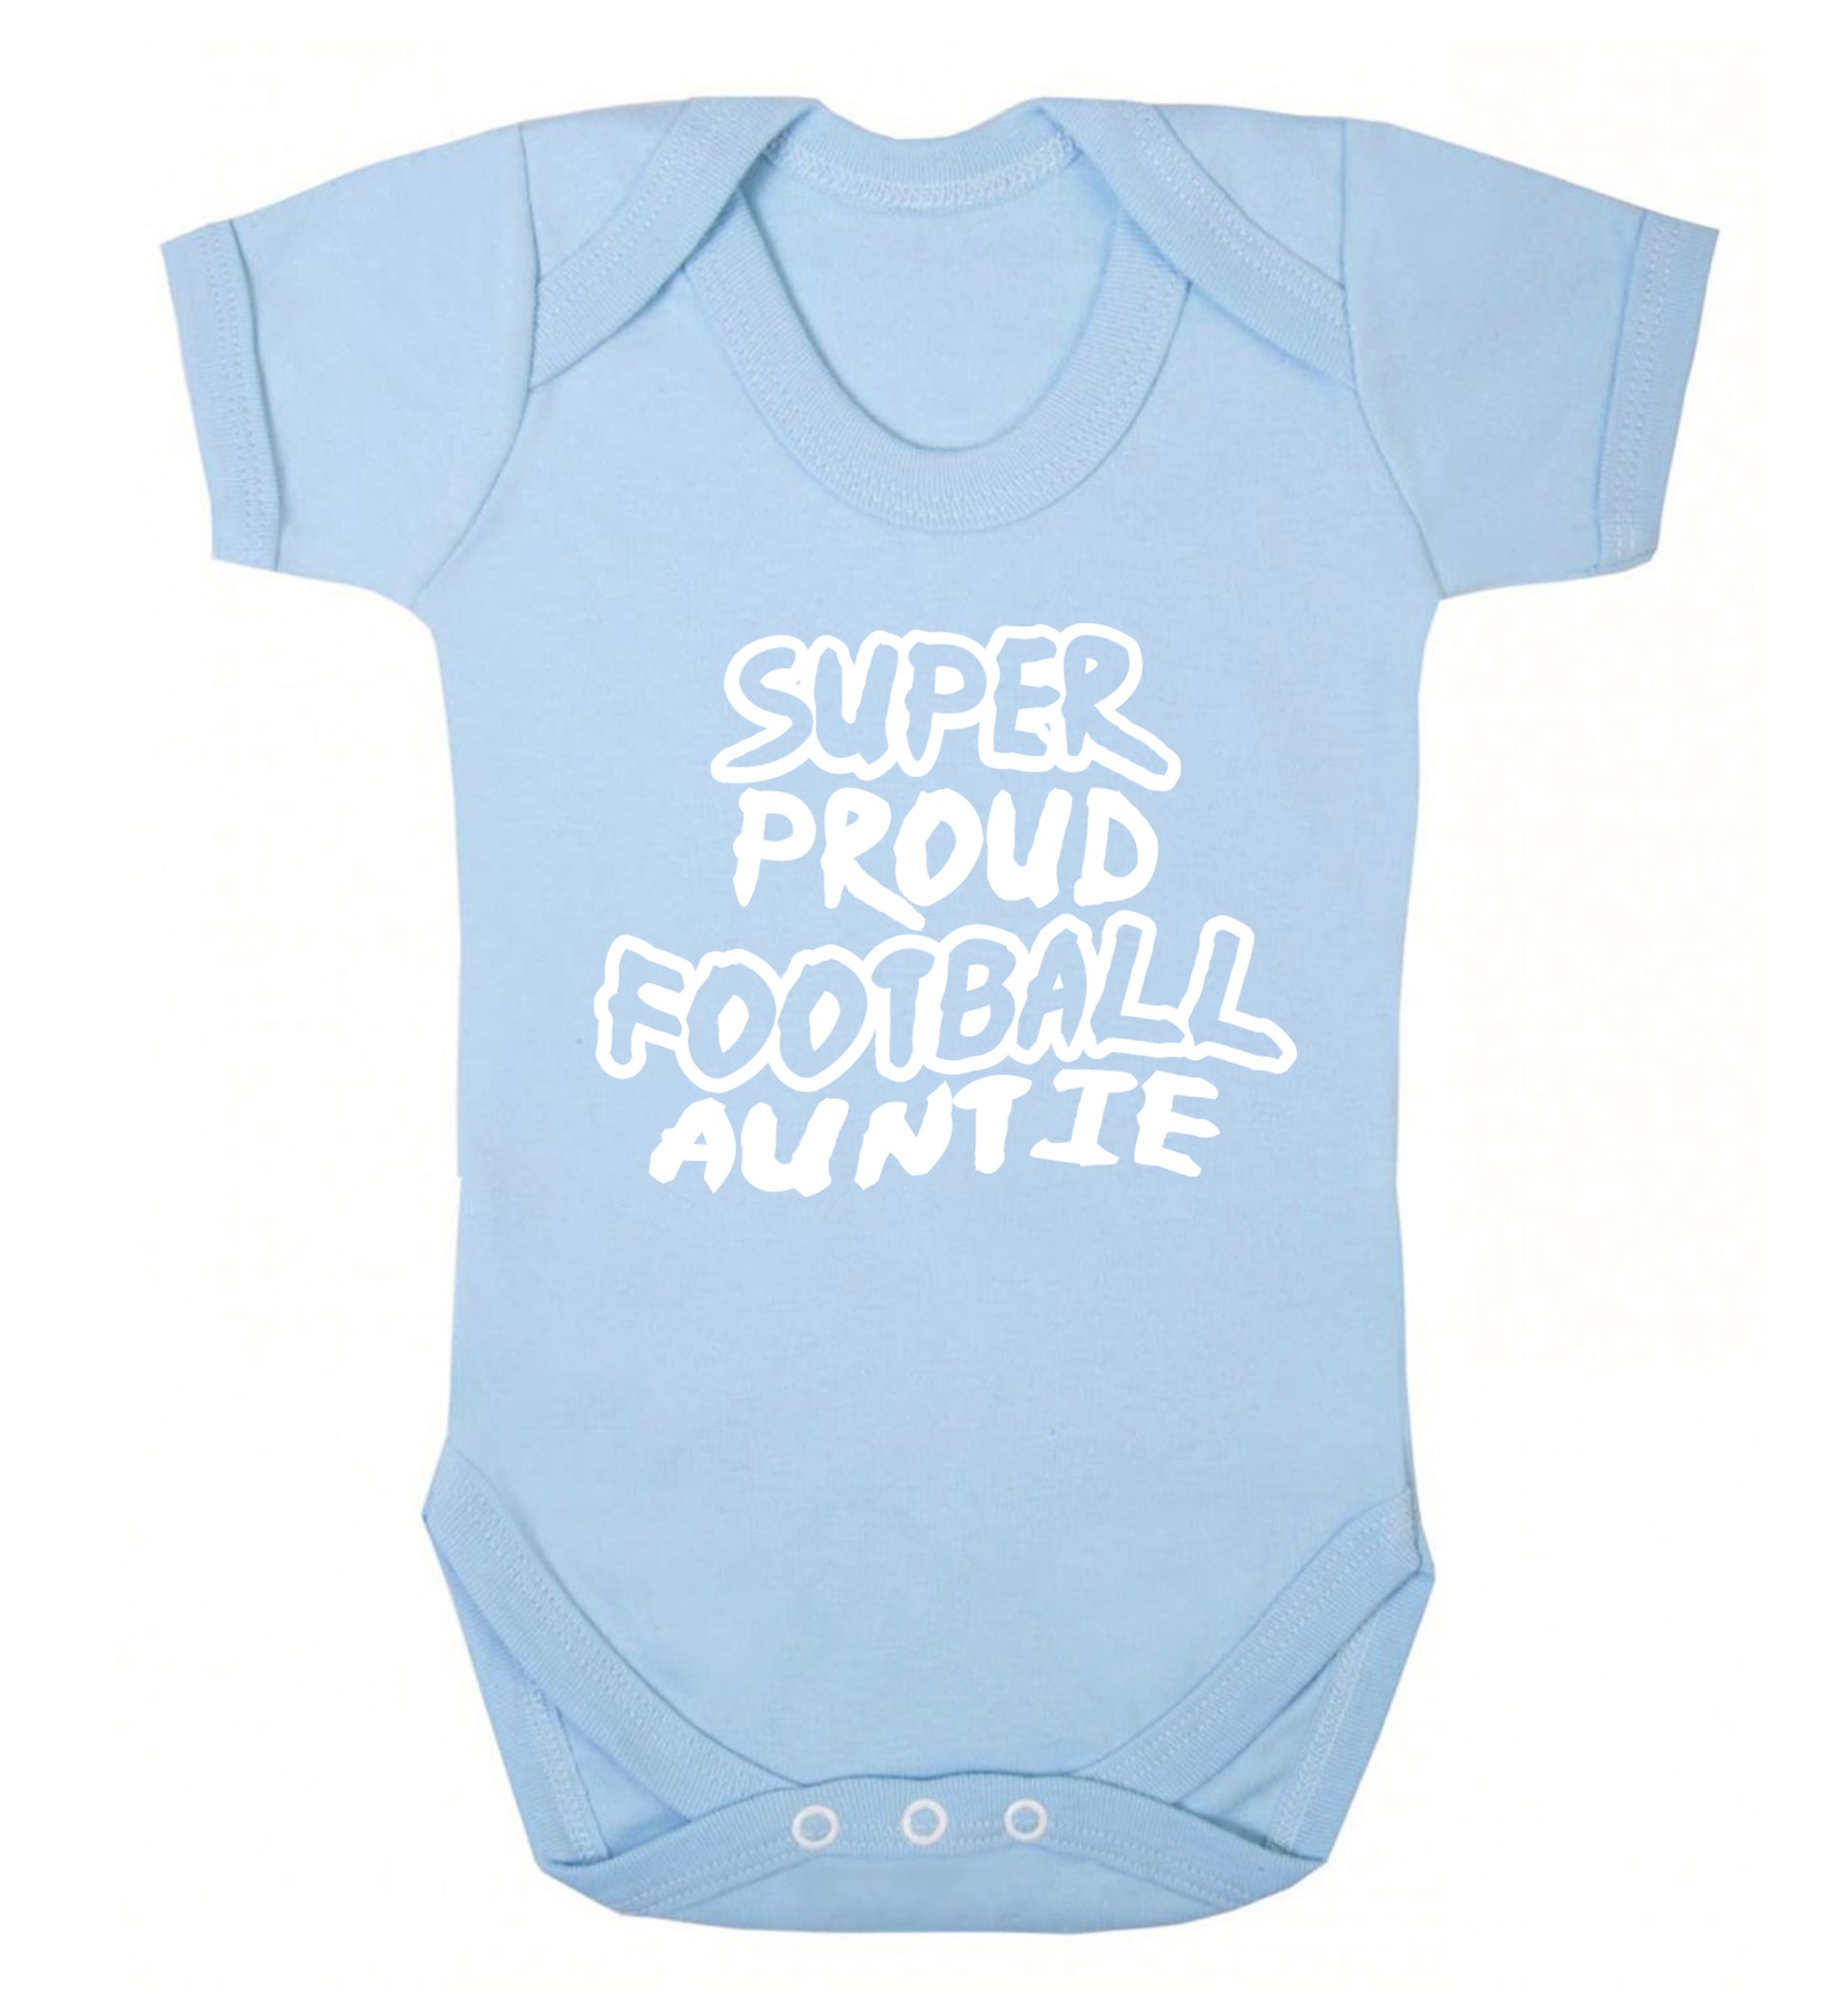 Super proud football auntie Baby Vest pale blue 18-24 months